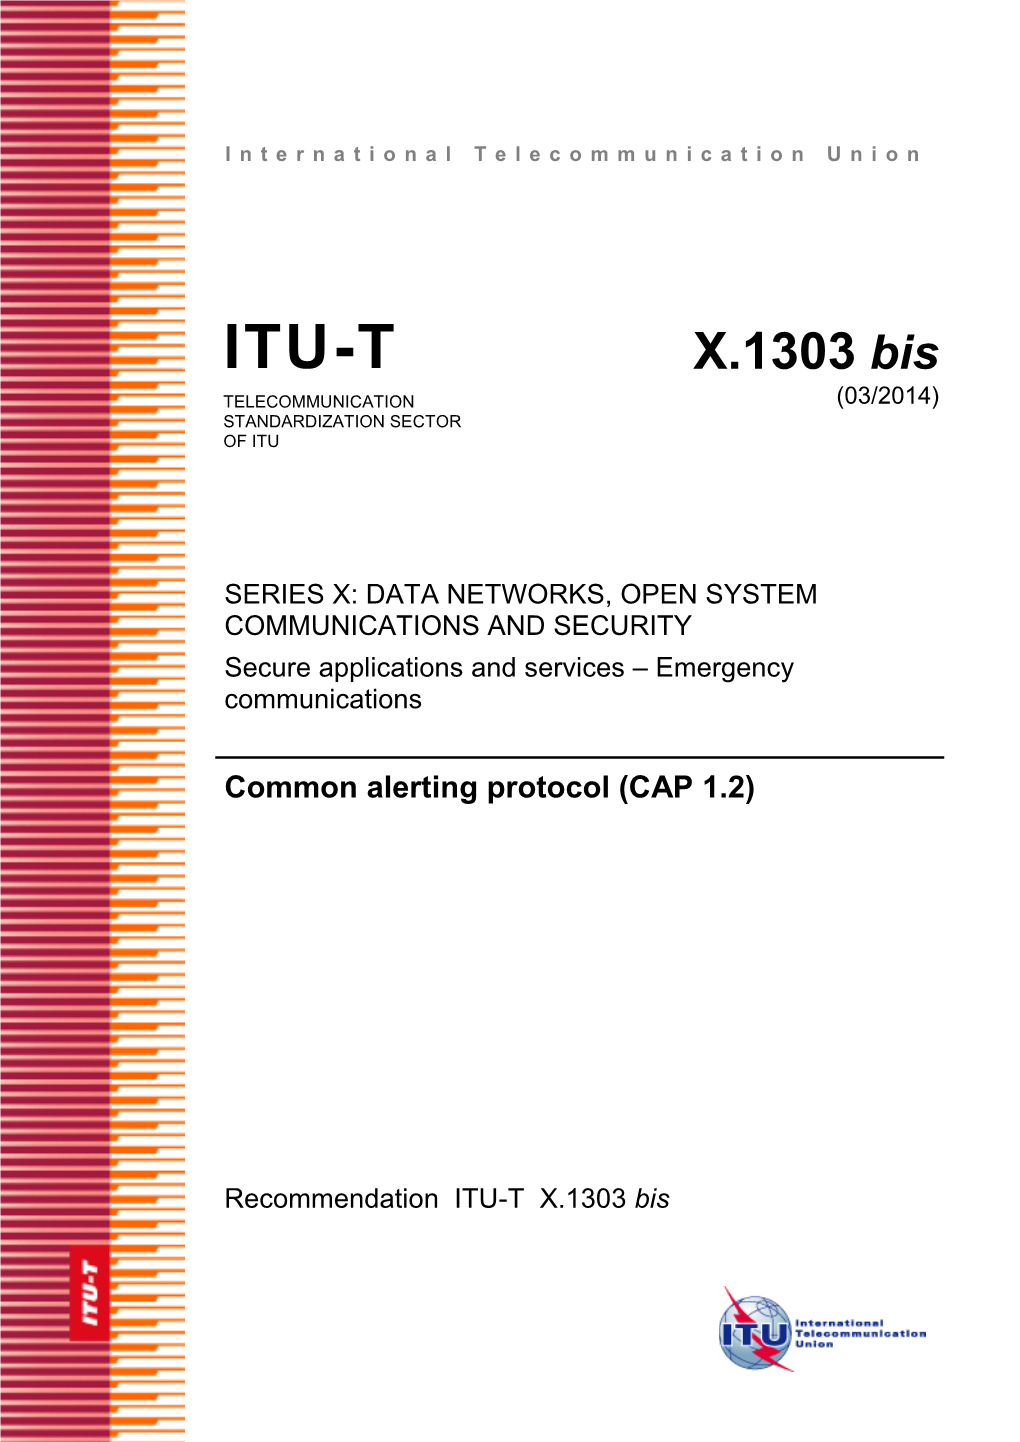 ITU-T Rec. X.1303 Bis (03/2014) Common Alerting Protocol (CAP 1.2)